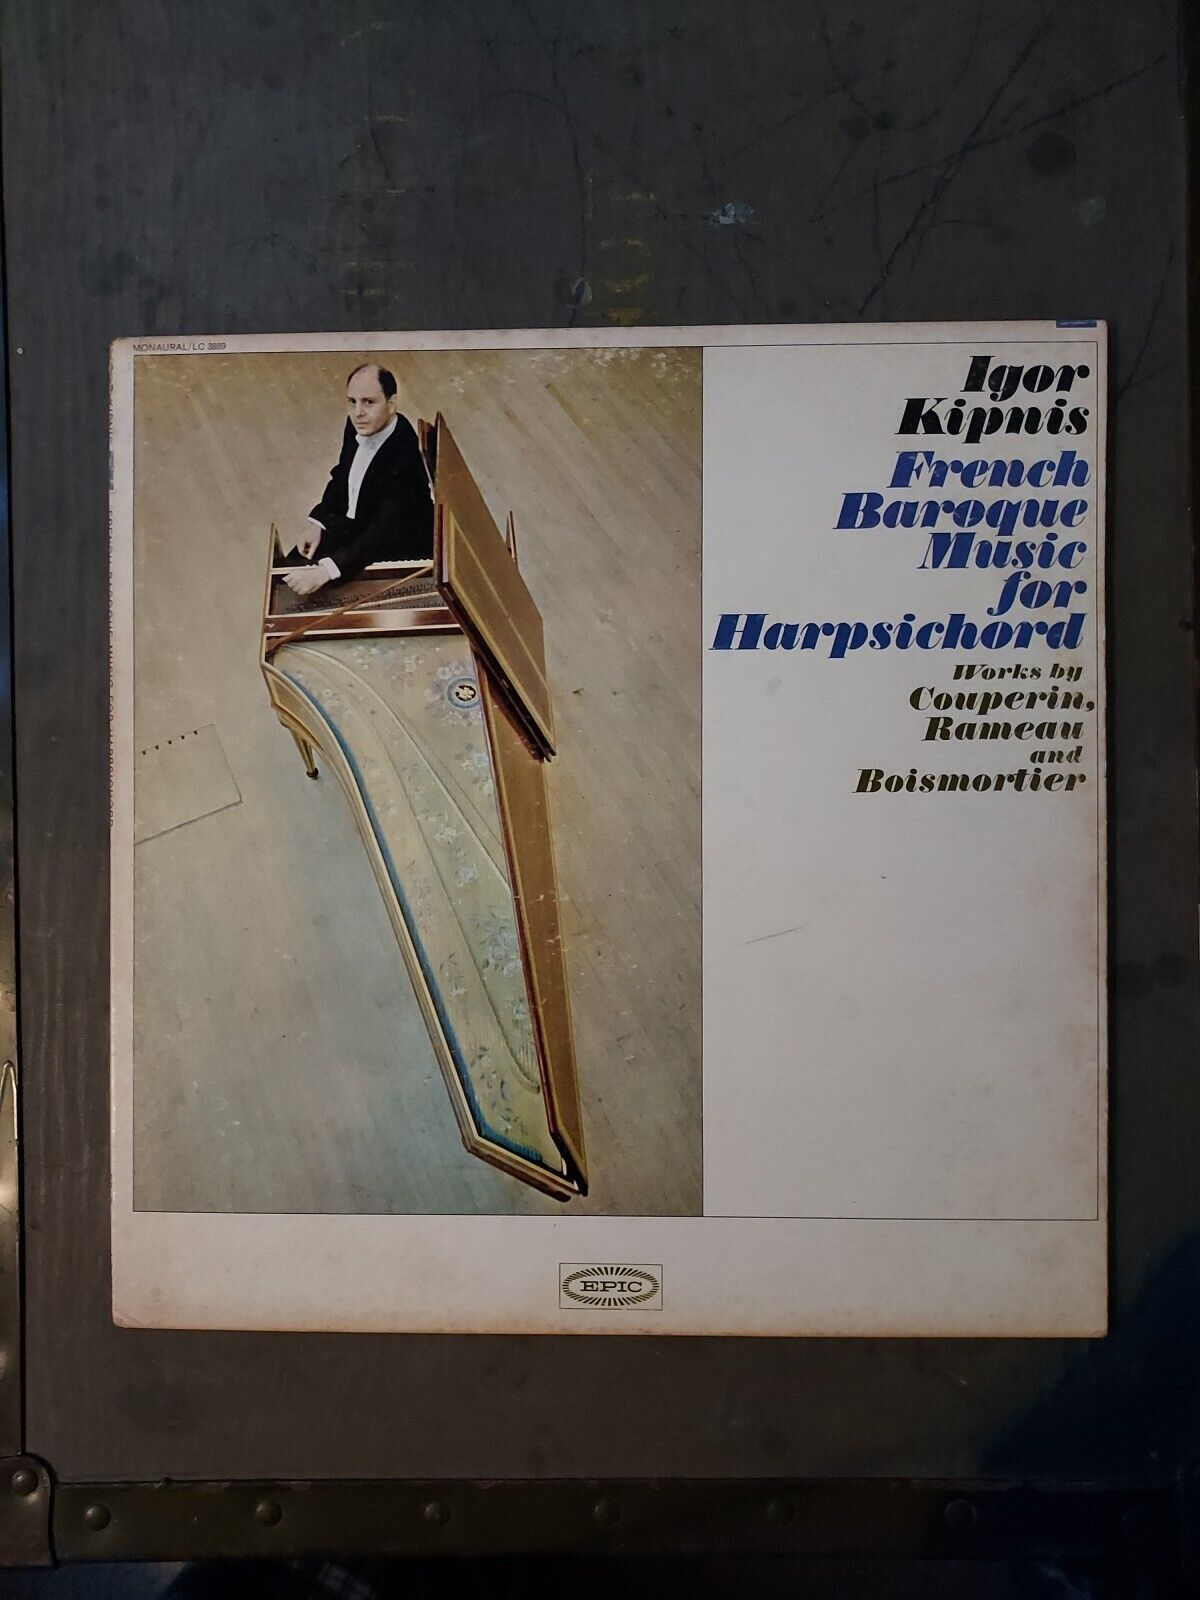 Igor Kipnis, French Baroque Music for Harpsichord vinyl LP